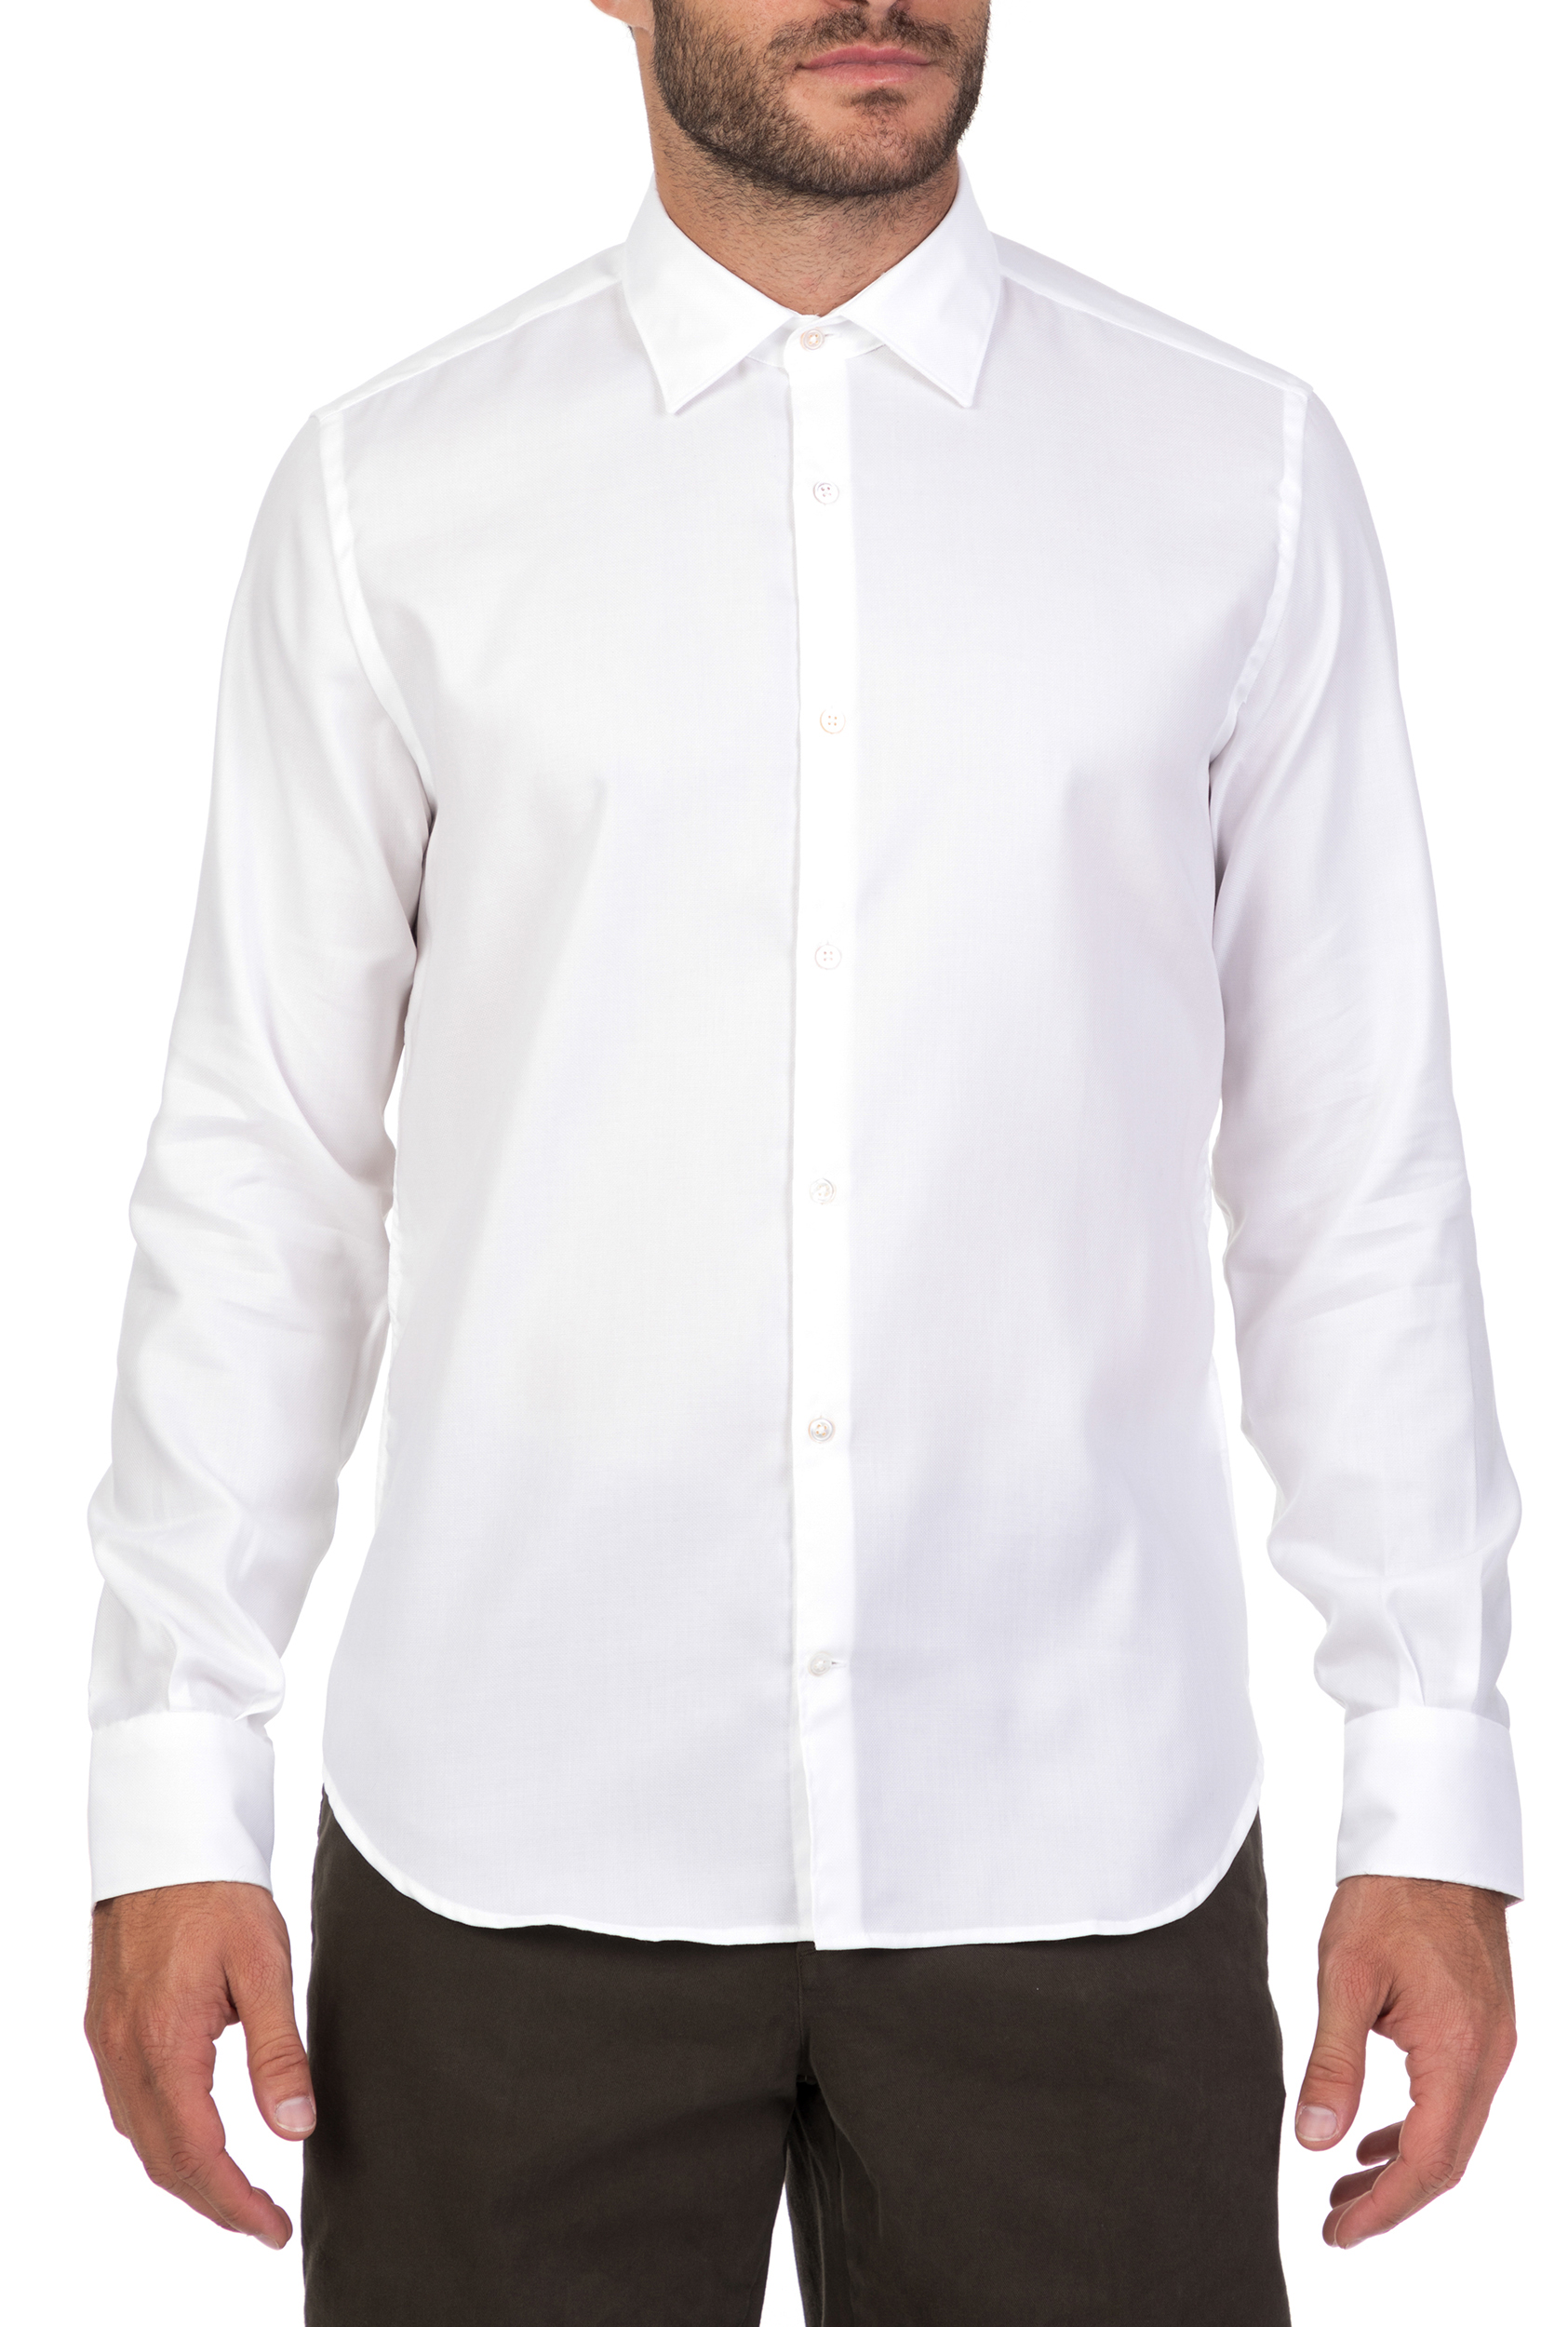 BROOKSFIELD - Ανδρικό μακρυμάνικο πουκάμισο BROOKSFIELD λευκό Ανδρικά/Ρούχα/Πουκάμισα/Μακρυμάνικα